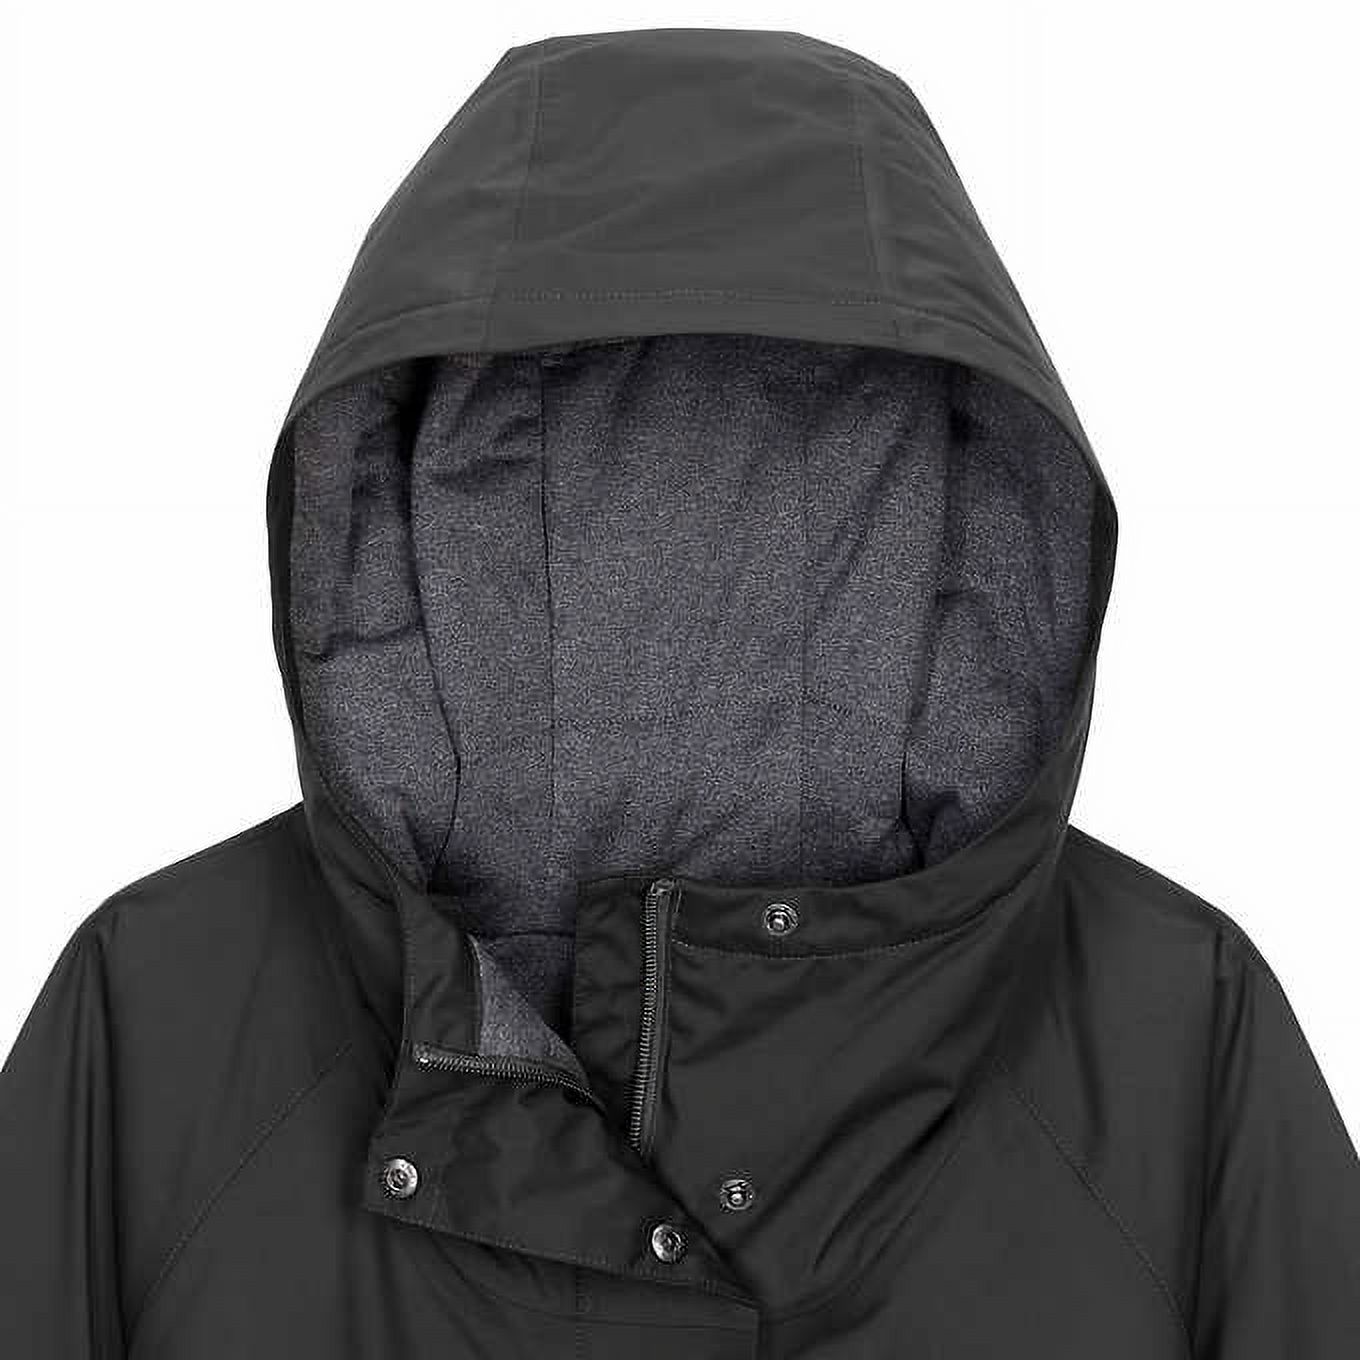 Columbia Women's Waterproof Omni-Tech Waterproof Hooded Jacket, Black, Medium - image 3 of 4